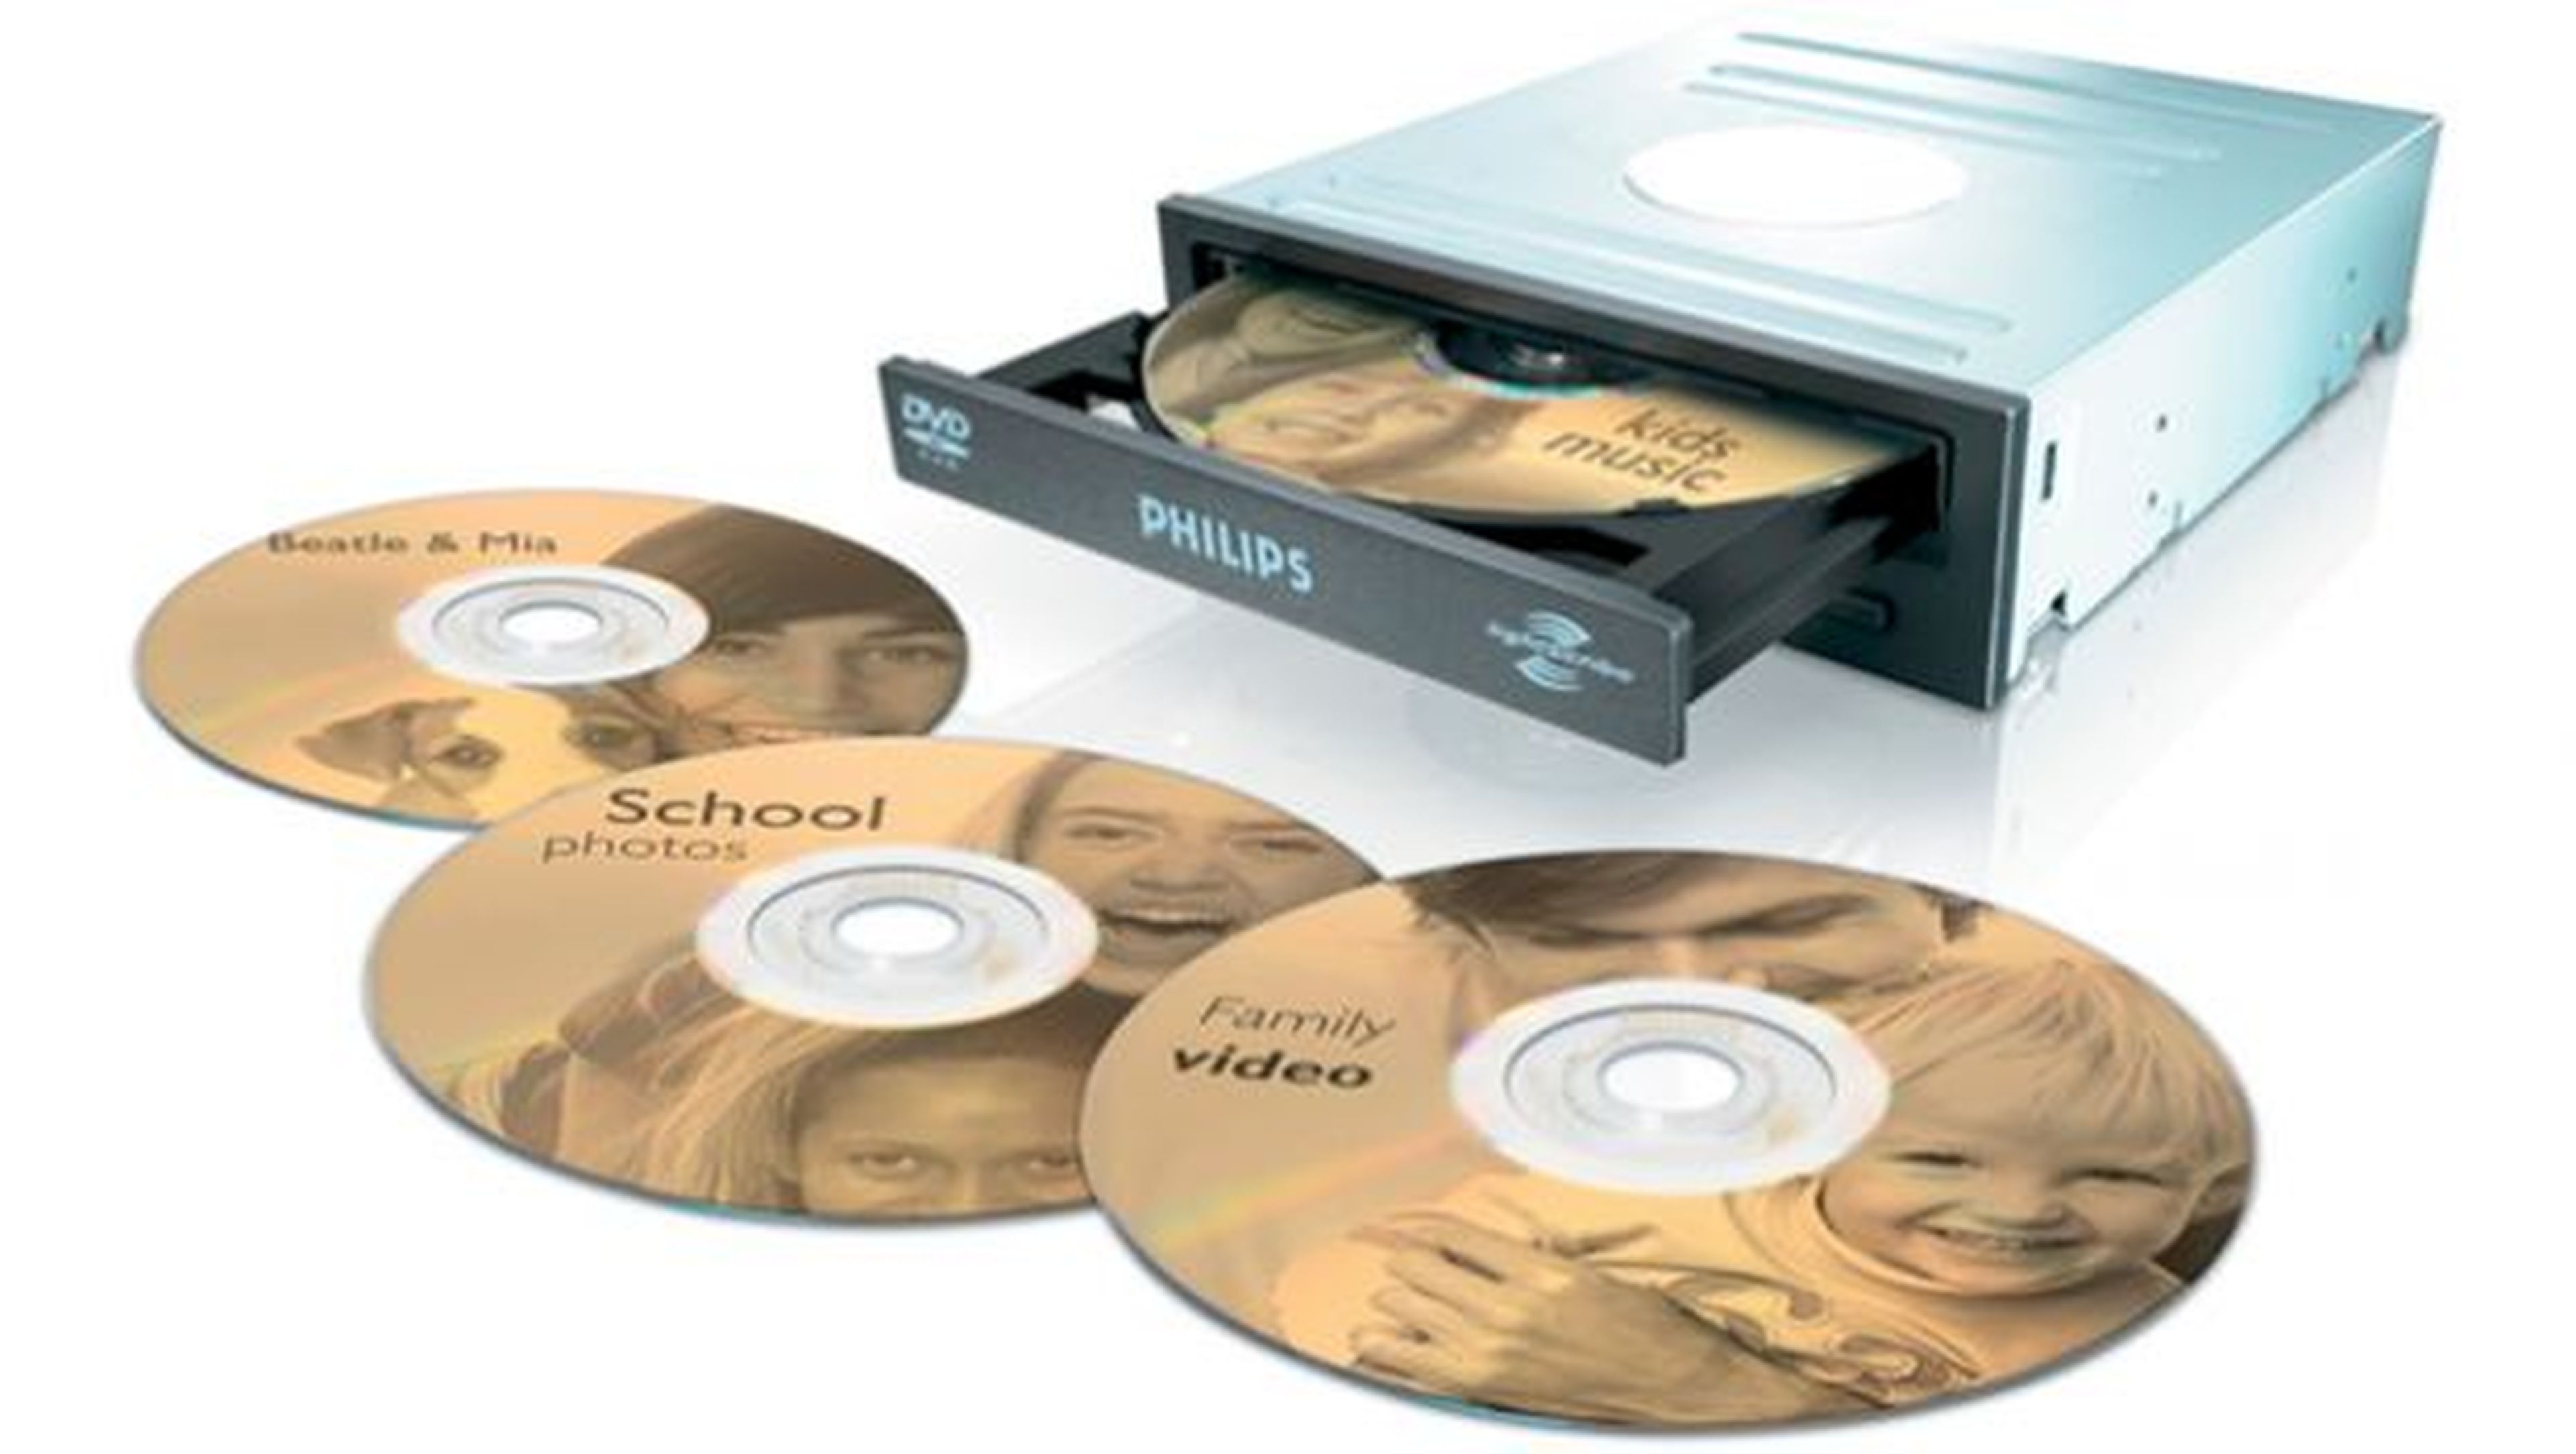 LightScribe permite crear imágenes y rótulos, directamente sobre la superficie de unos discos compatibles con este sistema de impresión.